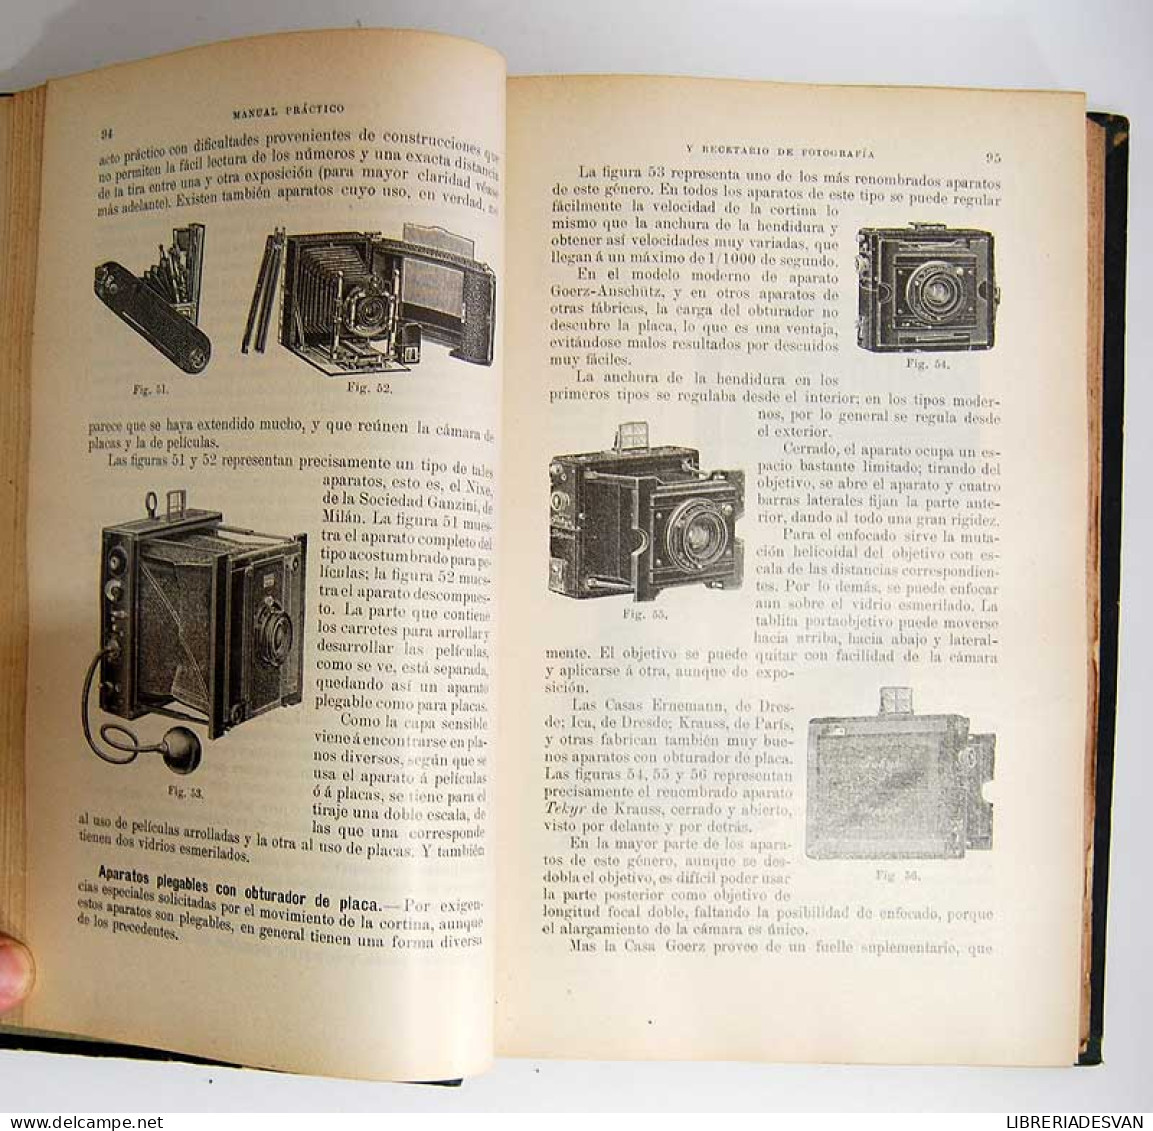 Manual práctico y Recetario de Fotografía - Rodolfo Namias